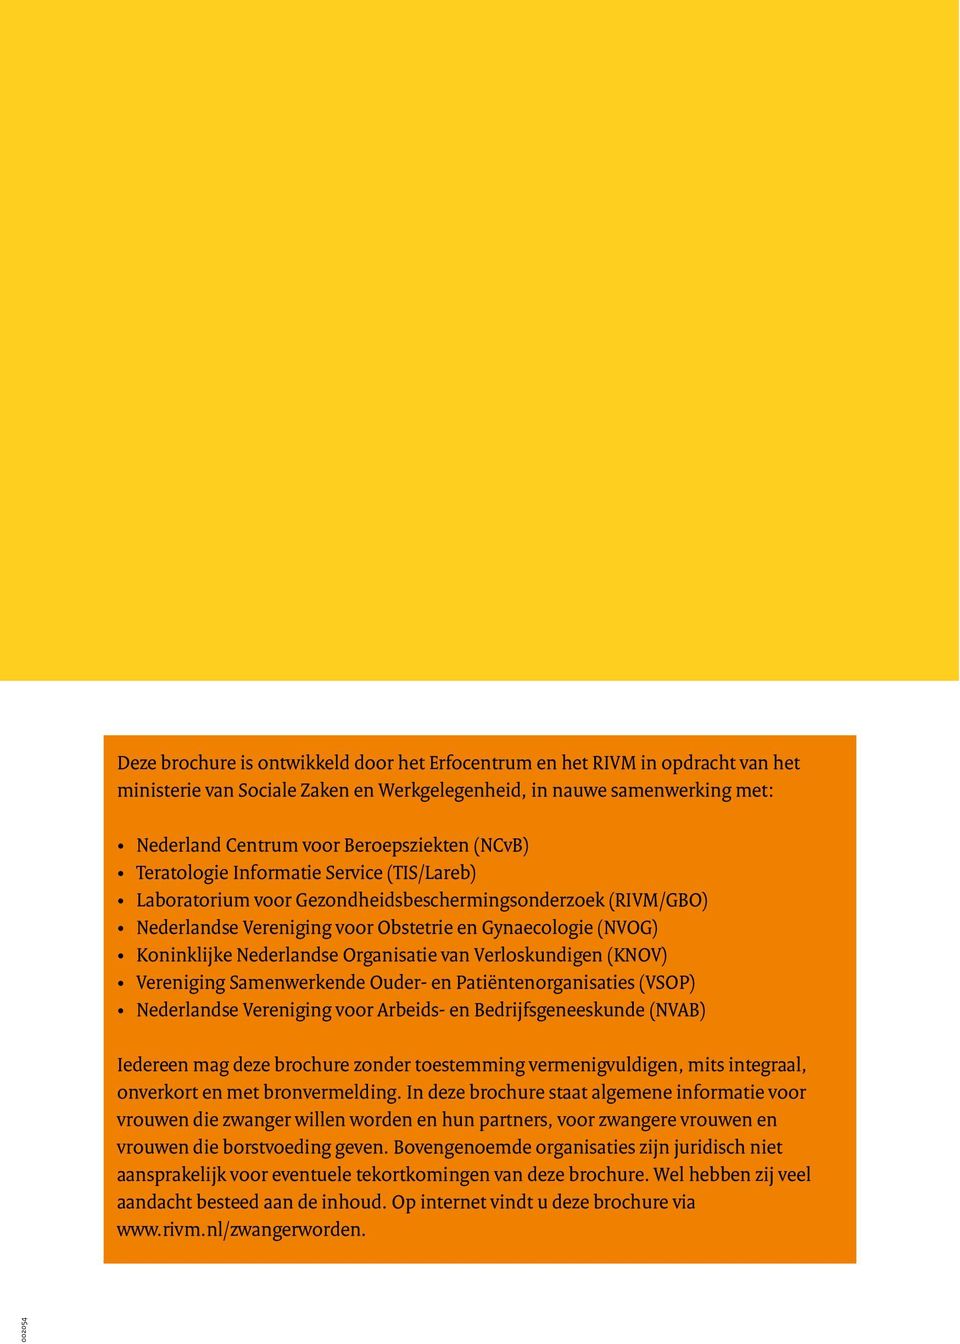 Organisatie van Verloskundigen (KNOV) Vereniging Samenwerkende Ouder- en Patiëntenorganisaties (VSOP) Nederlandse Vereniging voor Arbeids- en Bedrijfsgeneeskunde (NVAB) Iedereen mag deze brochure